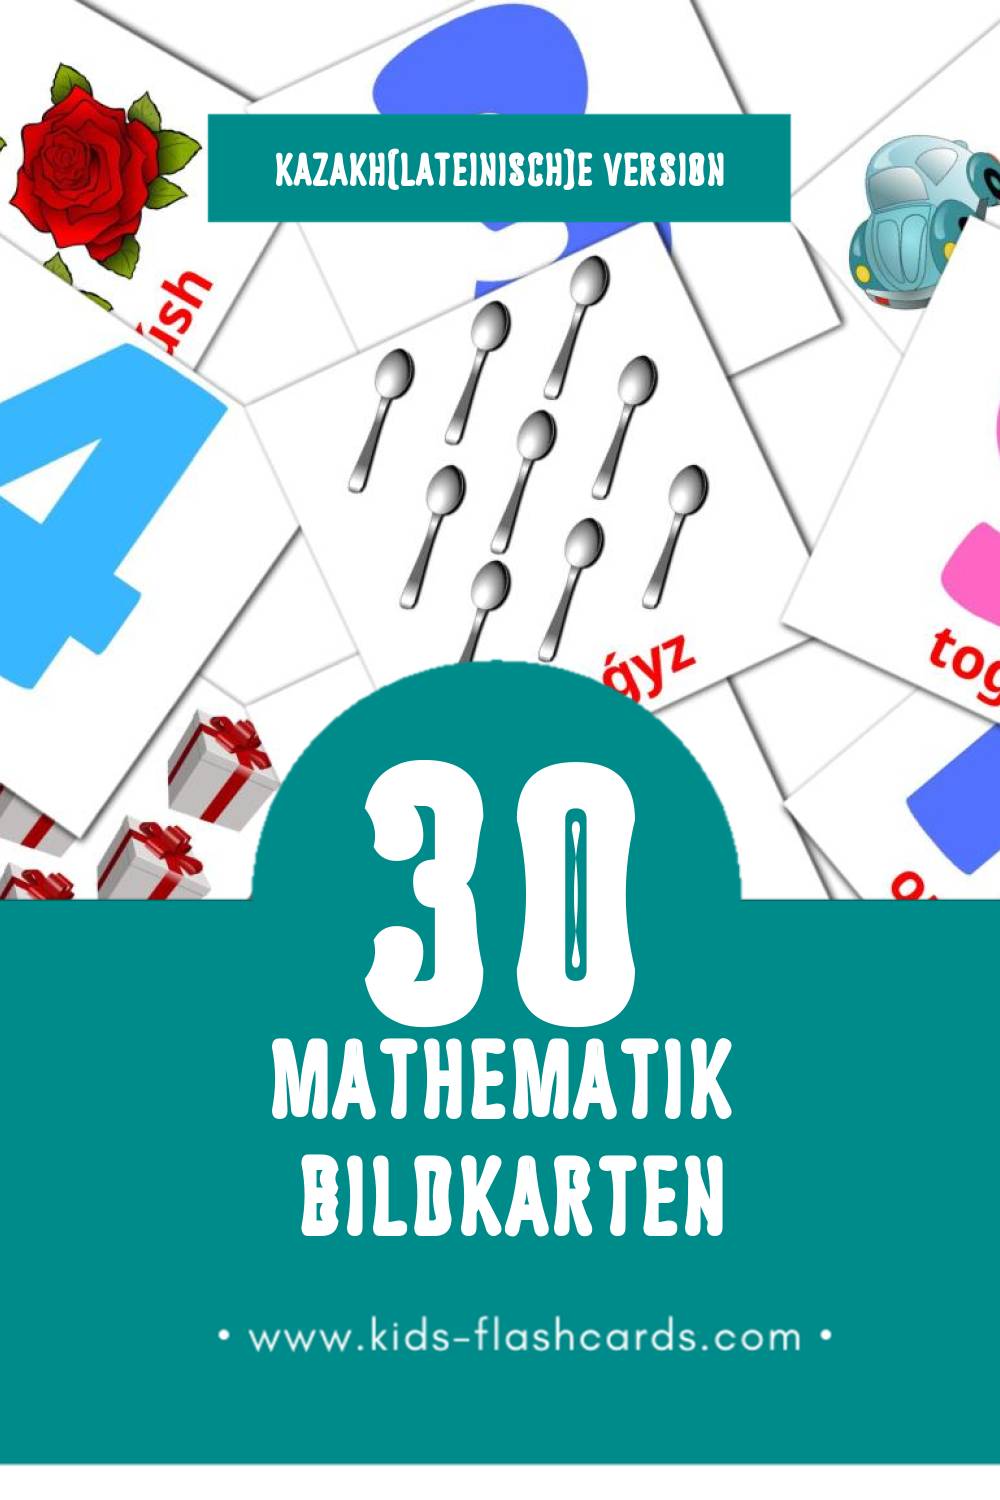 Visual Matematıka Flashcards für Kleinkinder (30 Karten in Kazakh(lateinisch))